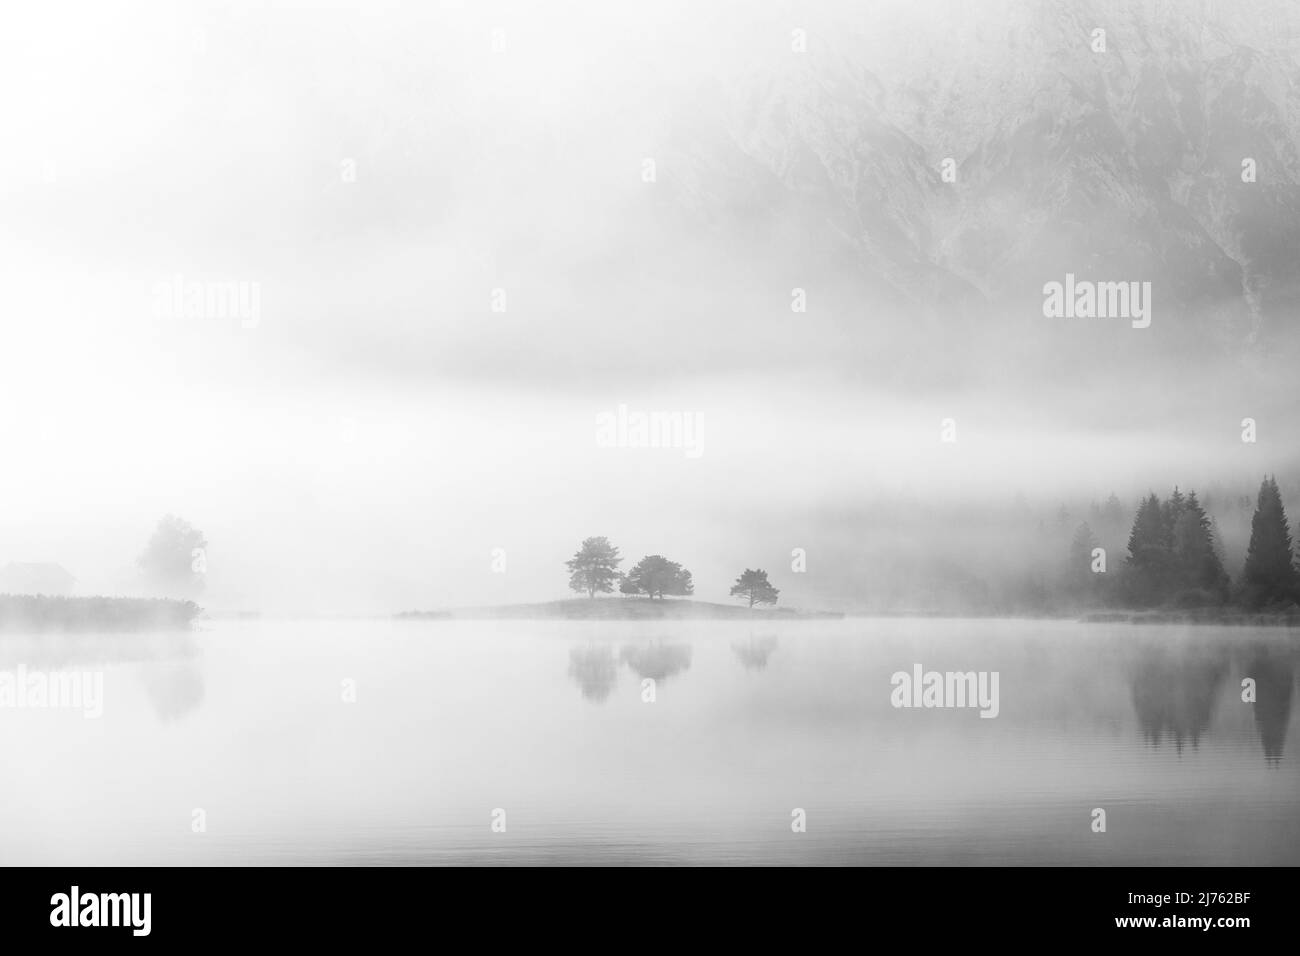 Herbststimmung an einem kleinen See in den bayerischen Alpen, im Hintergrund das Karwendelgebirge, eine kleine Halbinsel im Nebel und die Spiegelung im Wasser. Fast mystisch ist die Nebelatmosphäre mit den schroffen Bergen. Stockfoto